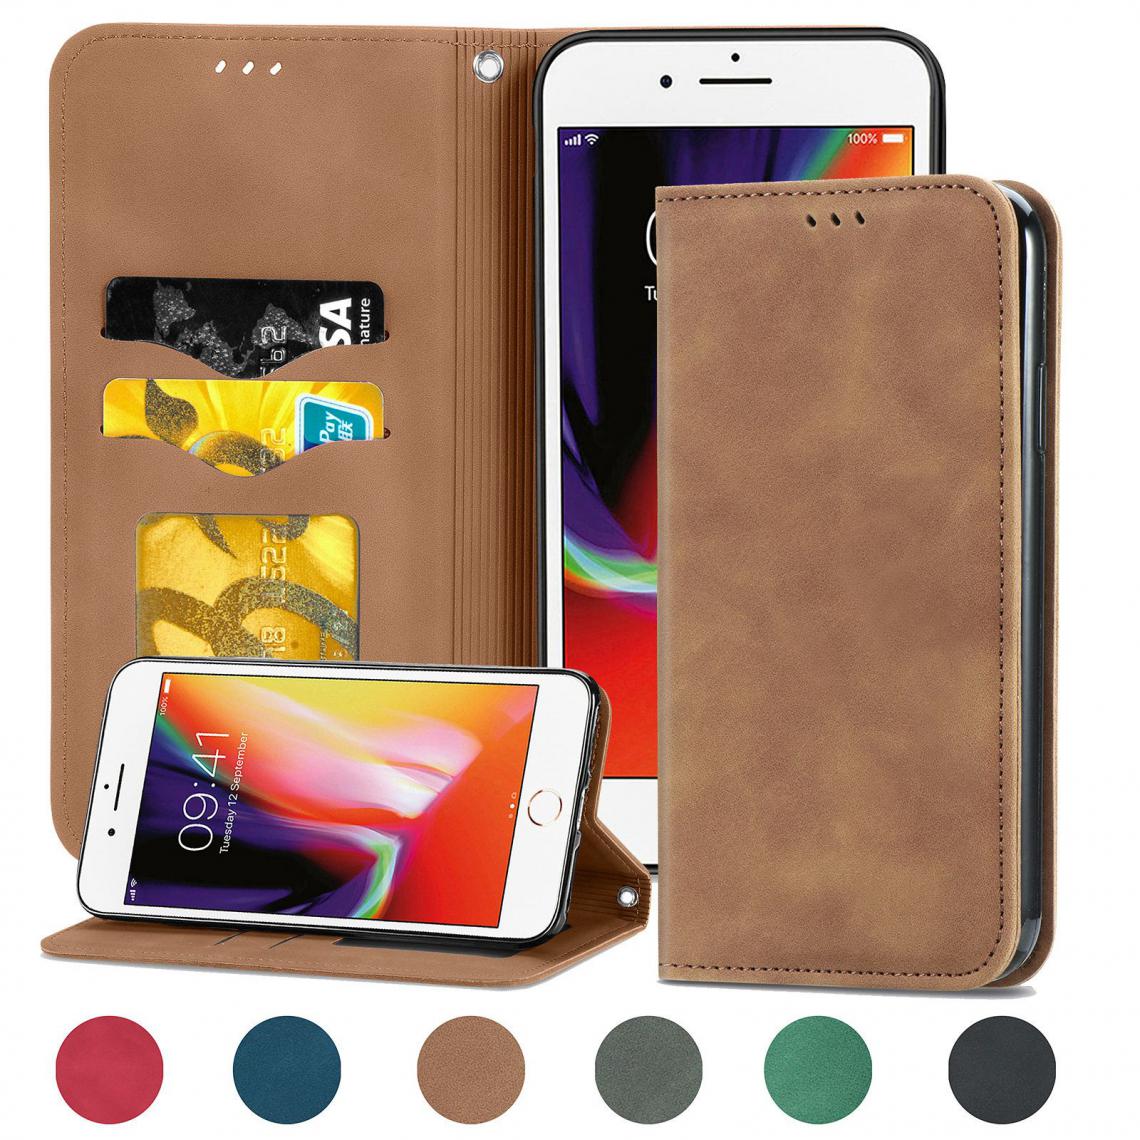 OtterBox - iPhone 7/8 Housse Etui Coque de protection type portefeuille (support carte de credit) [Marron] - Coque, étui smartphone